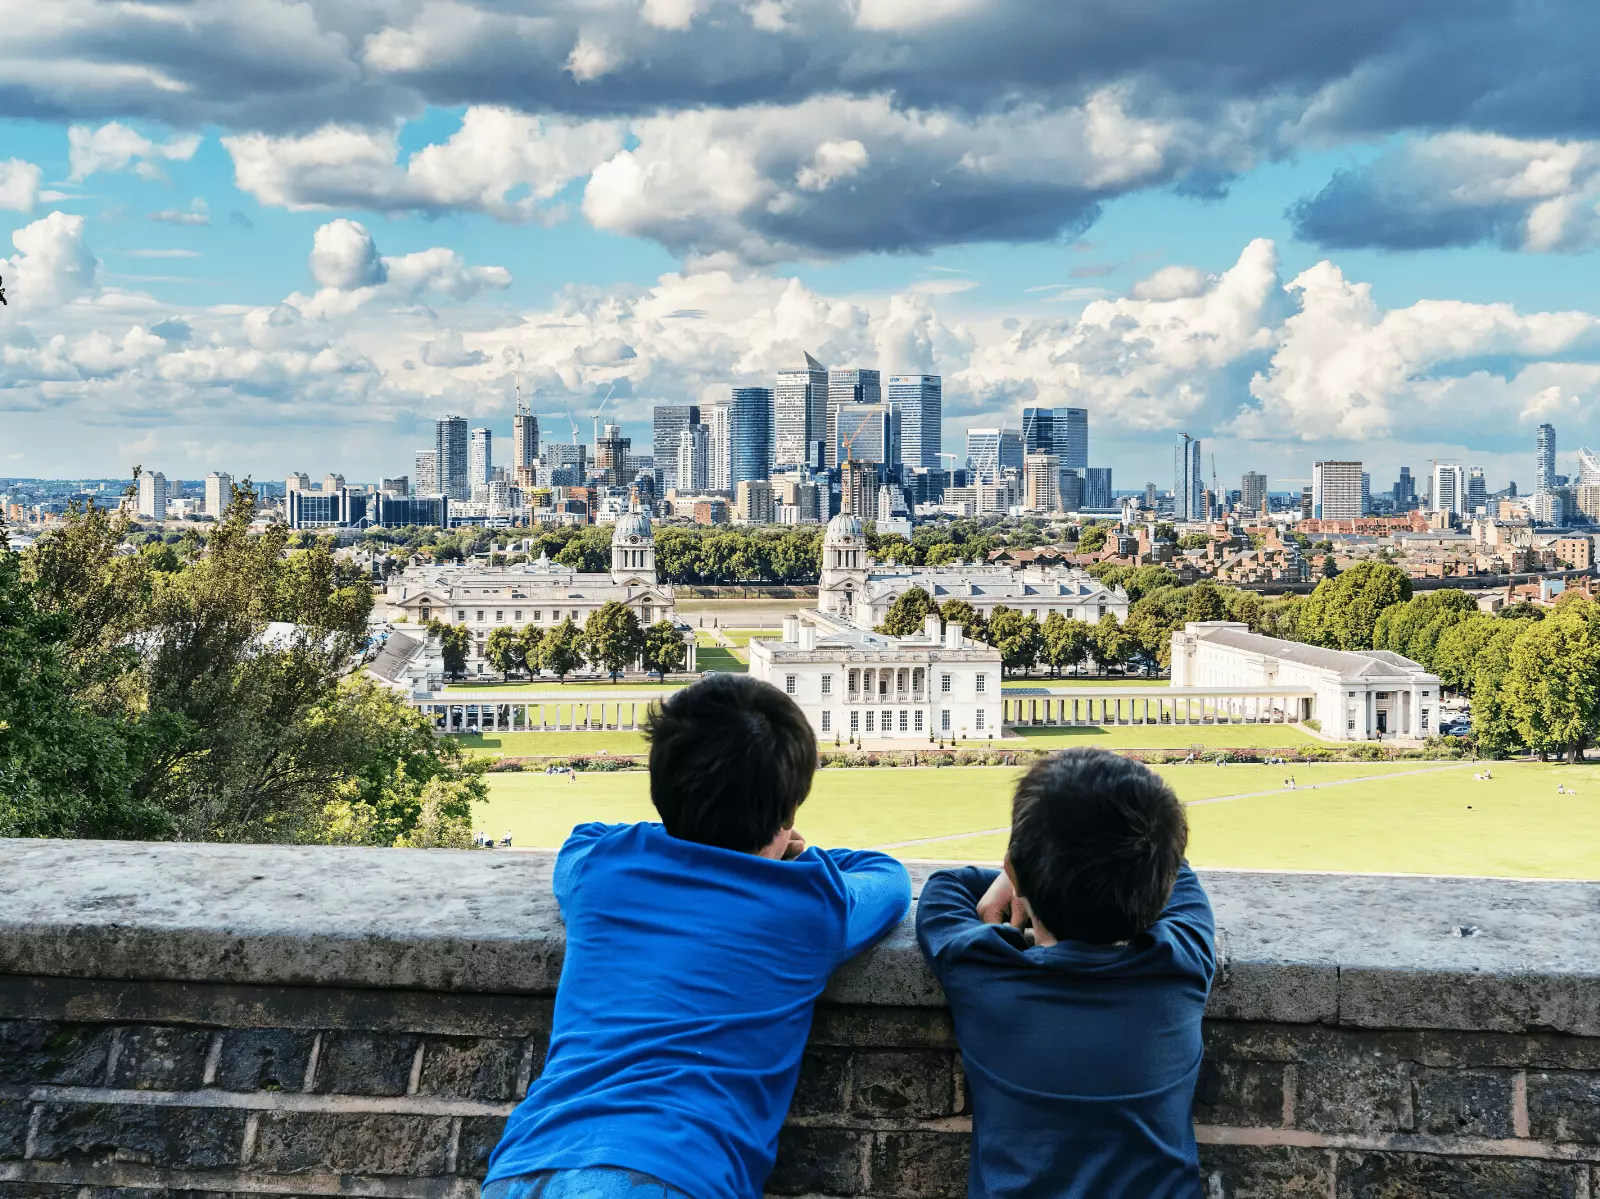 iki çocuk şehir manzarası izliyor